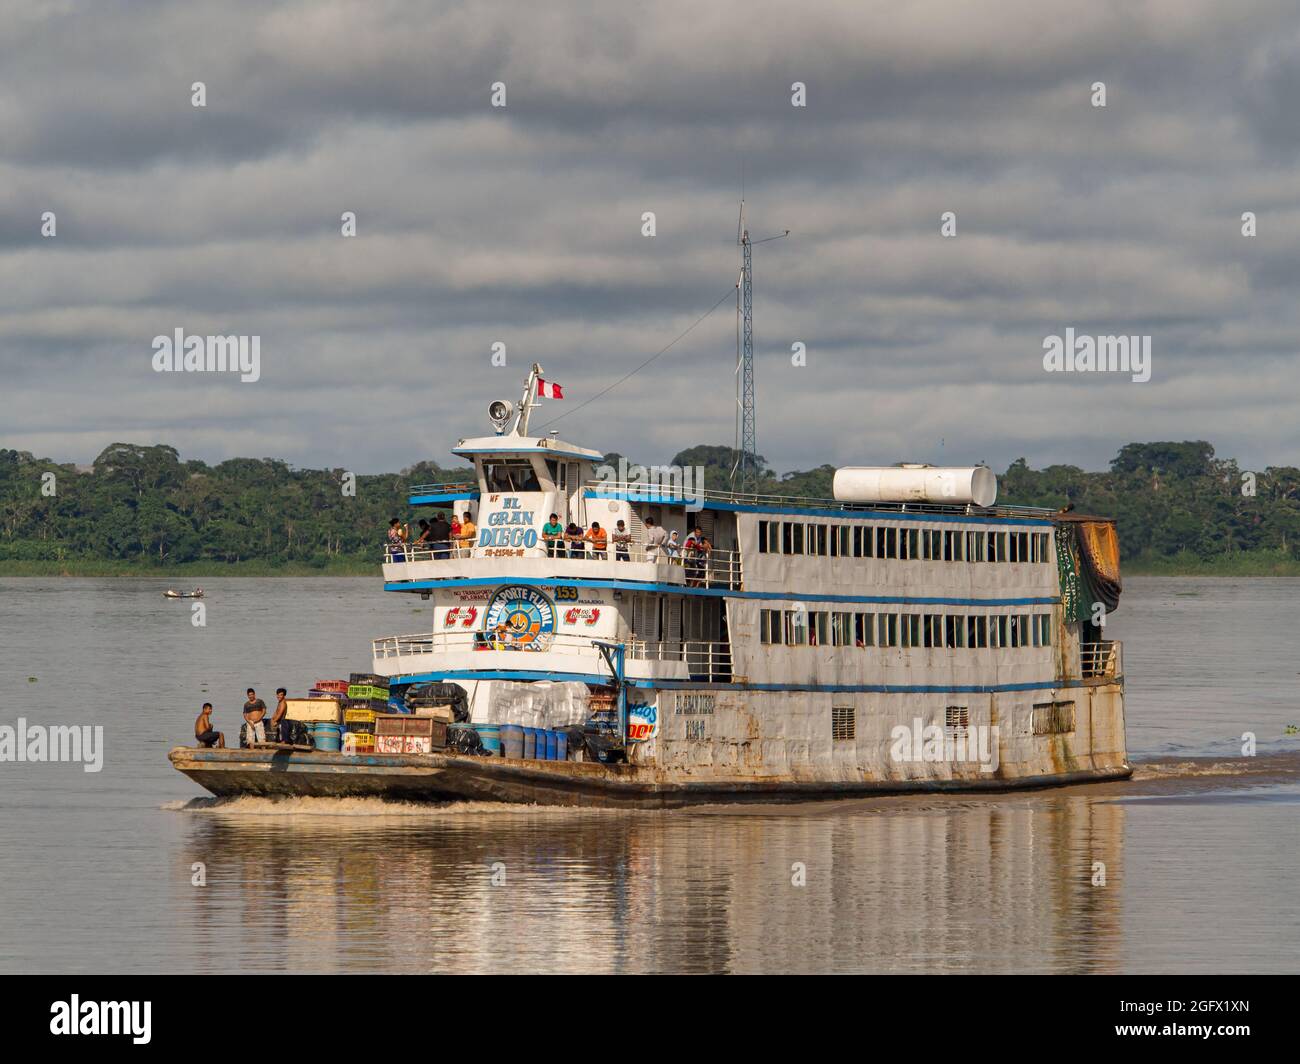 Amazon River, Peru - Dec 12, 2017: Cargo boat in the middle of Amazon river, Amazonia, South America Stock Photo